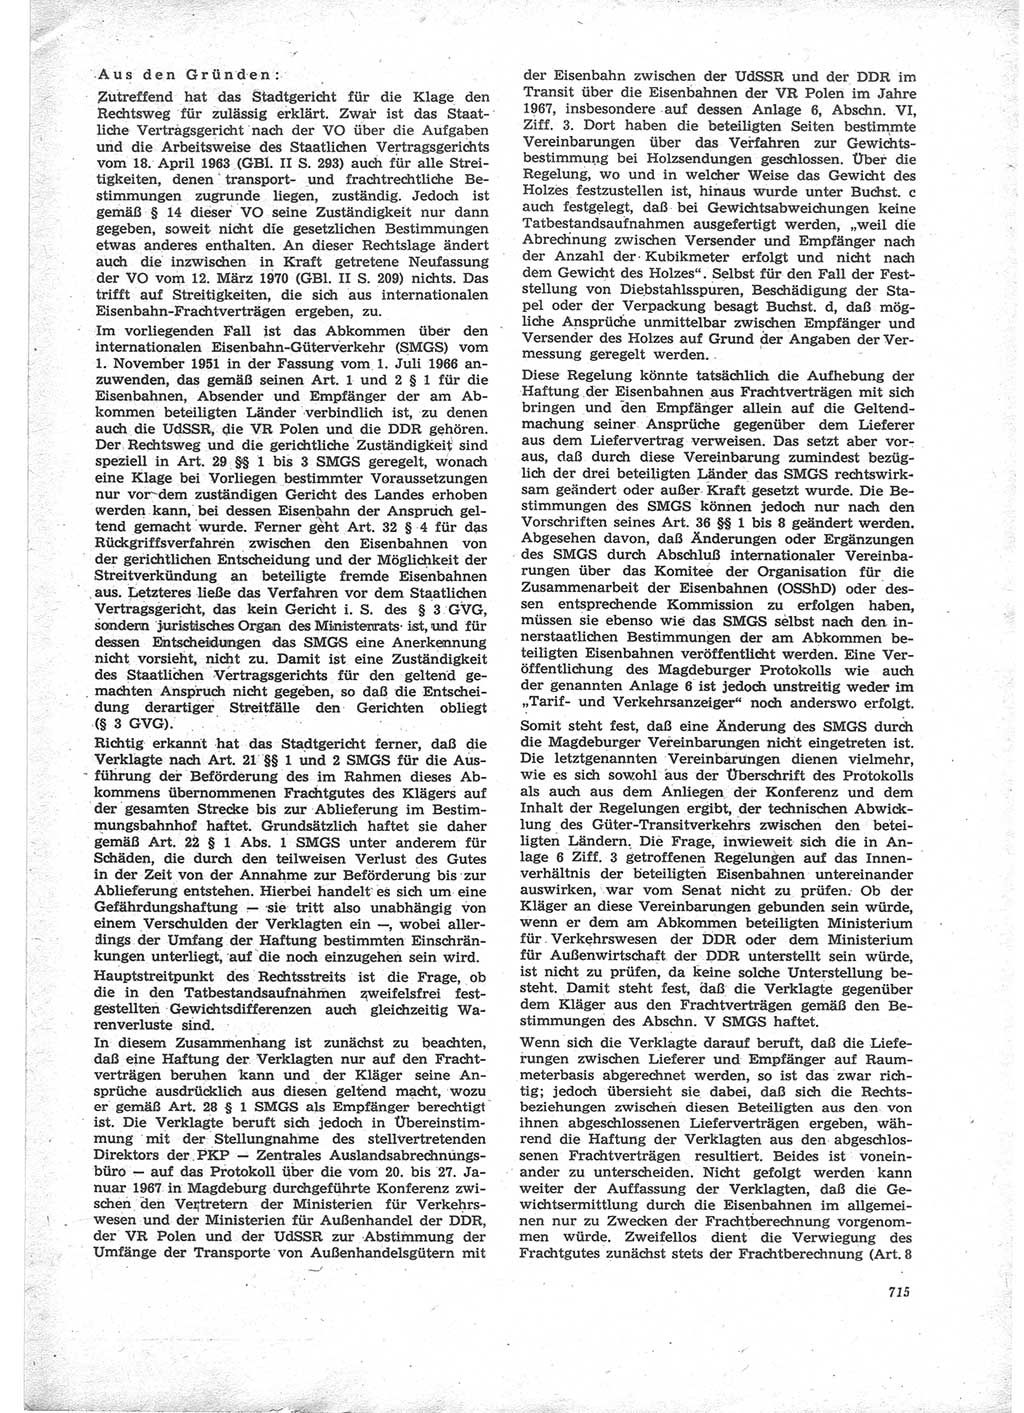 Neue Justiz (NJ), Zeitschrift für Recht und Rechtswissenschaft [Deutsche Demokratische Republik (DDR)], 24. Jahrgang 1970, Seite 715 (NJ DDR 1970, S. 715)